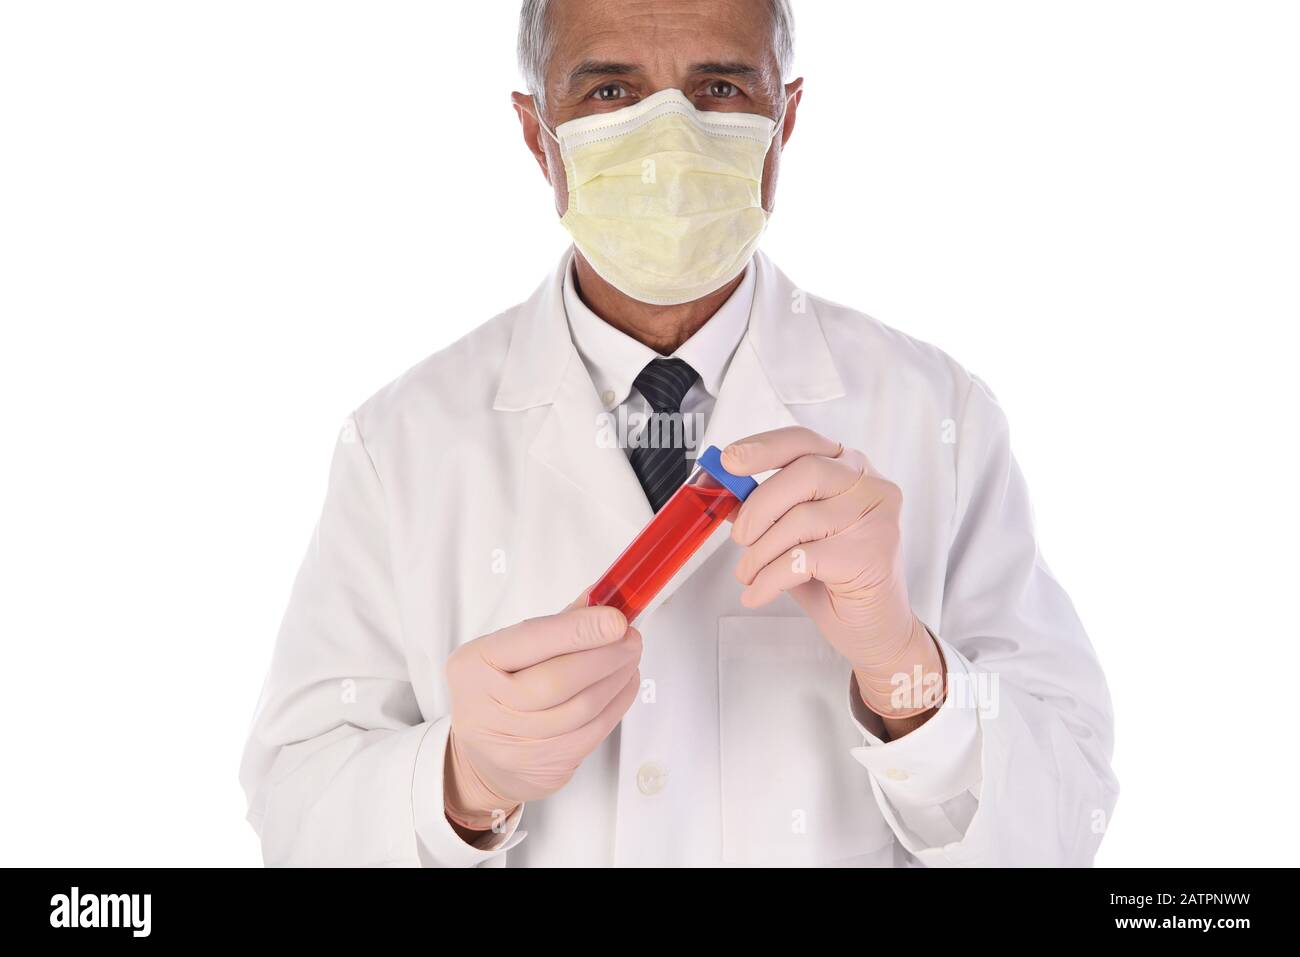 Labortechniker, der eine Durchstechflasche mit roter Flüssigkeit vor seinem Körper hält. Der Mann trägt eine Schutzmaske, um eine Infektion zu verhindern. Stockfoto